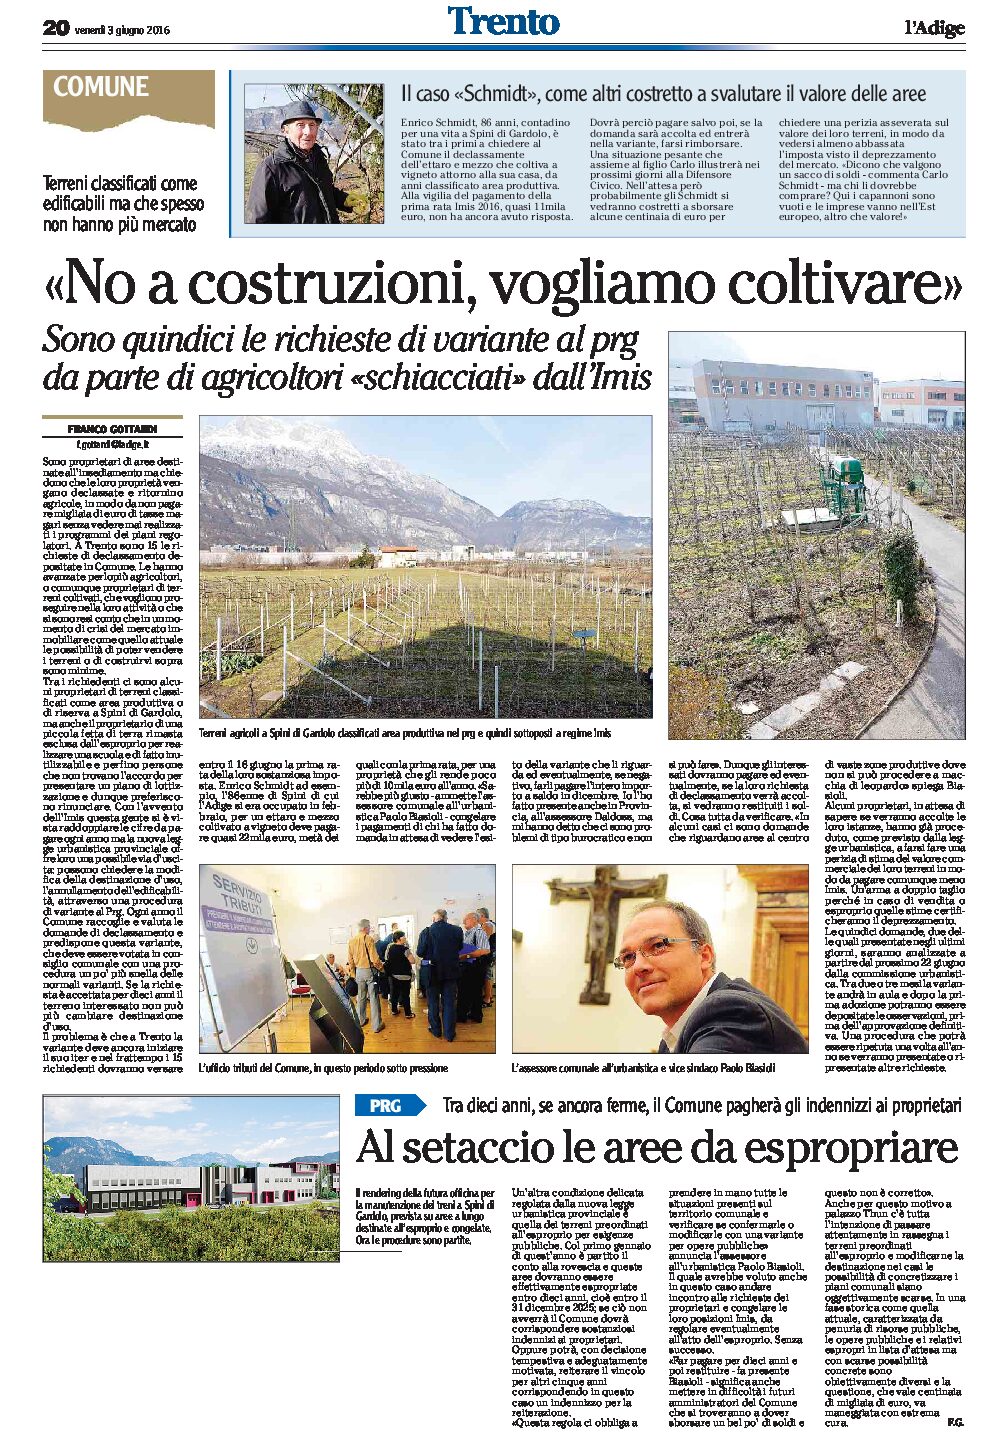 Trento, Spini, Prg: no a costruzioni, vogliamo coltivare. Al setaccio le aree da espropriare